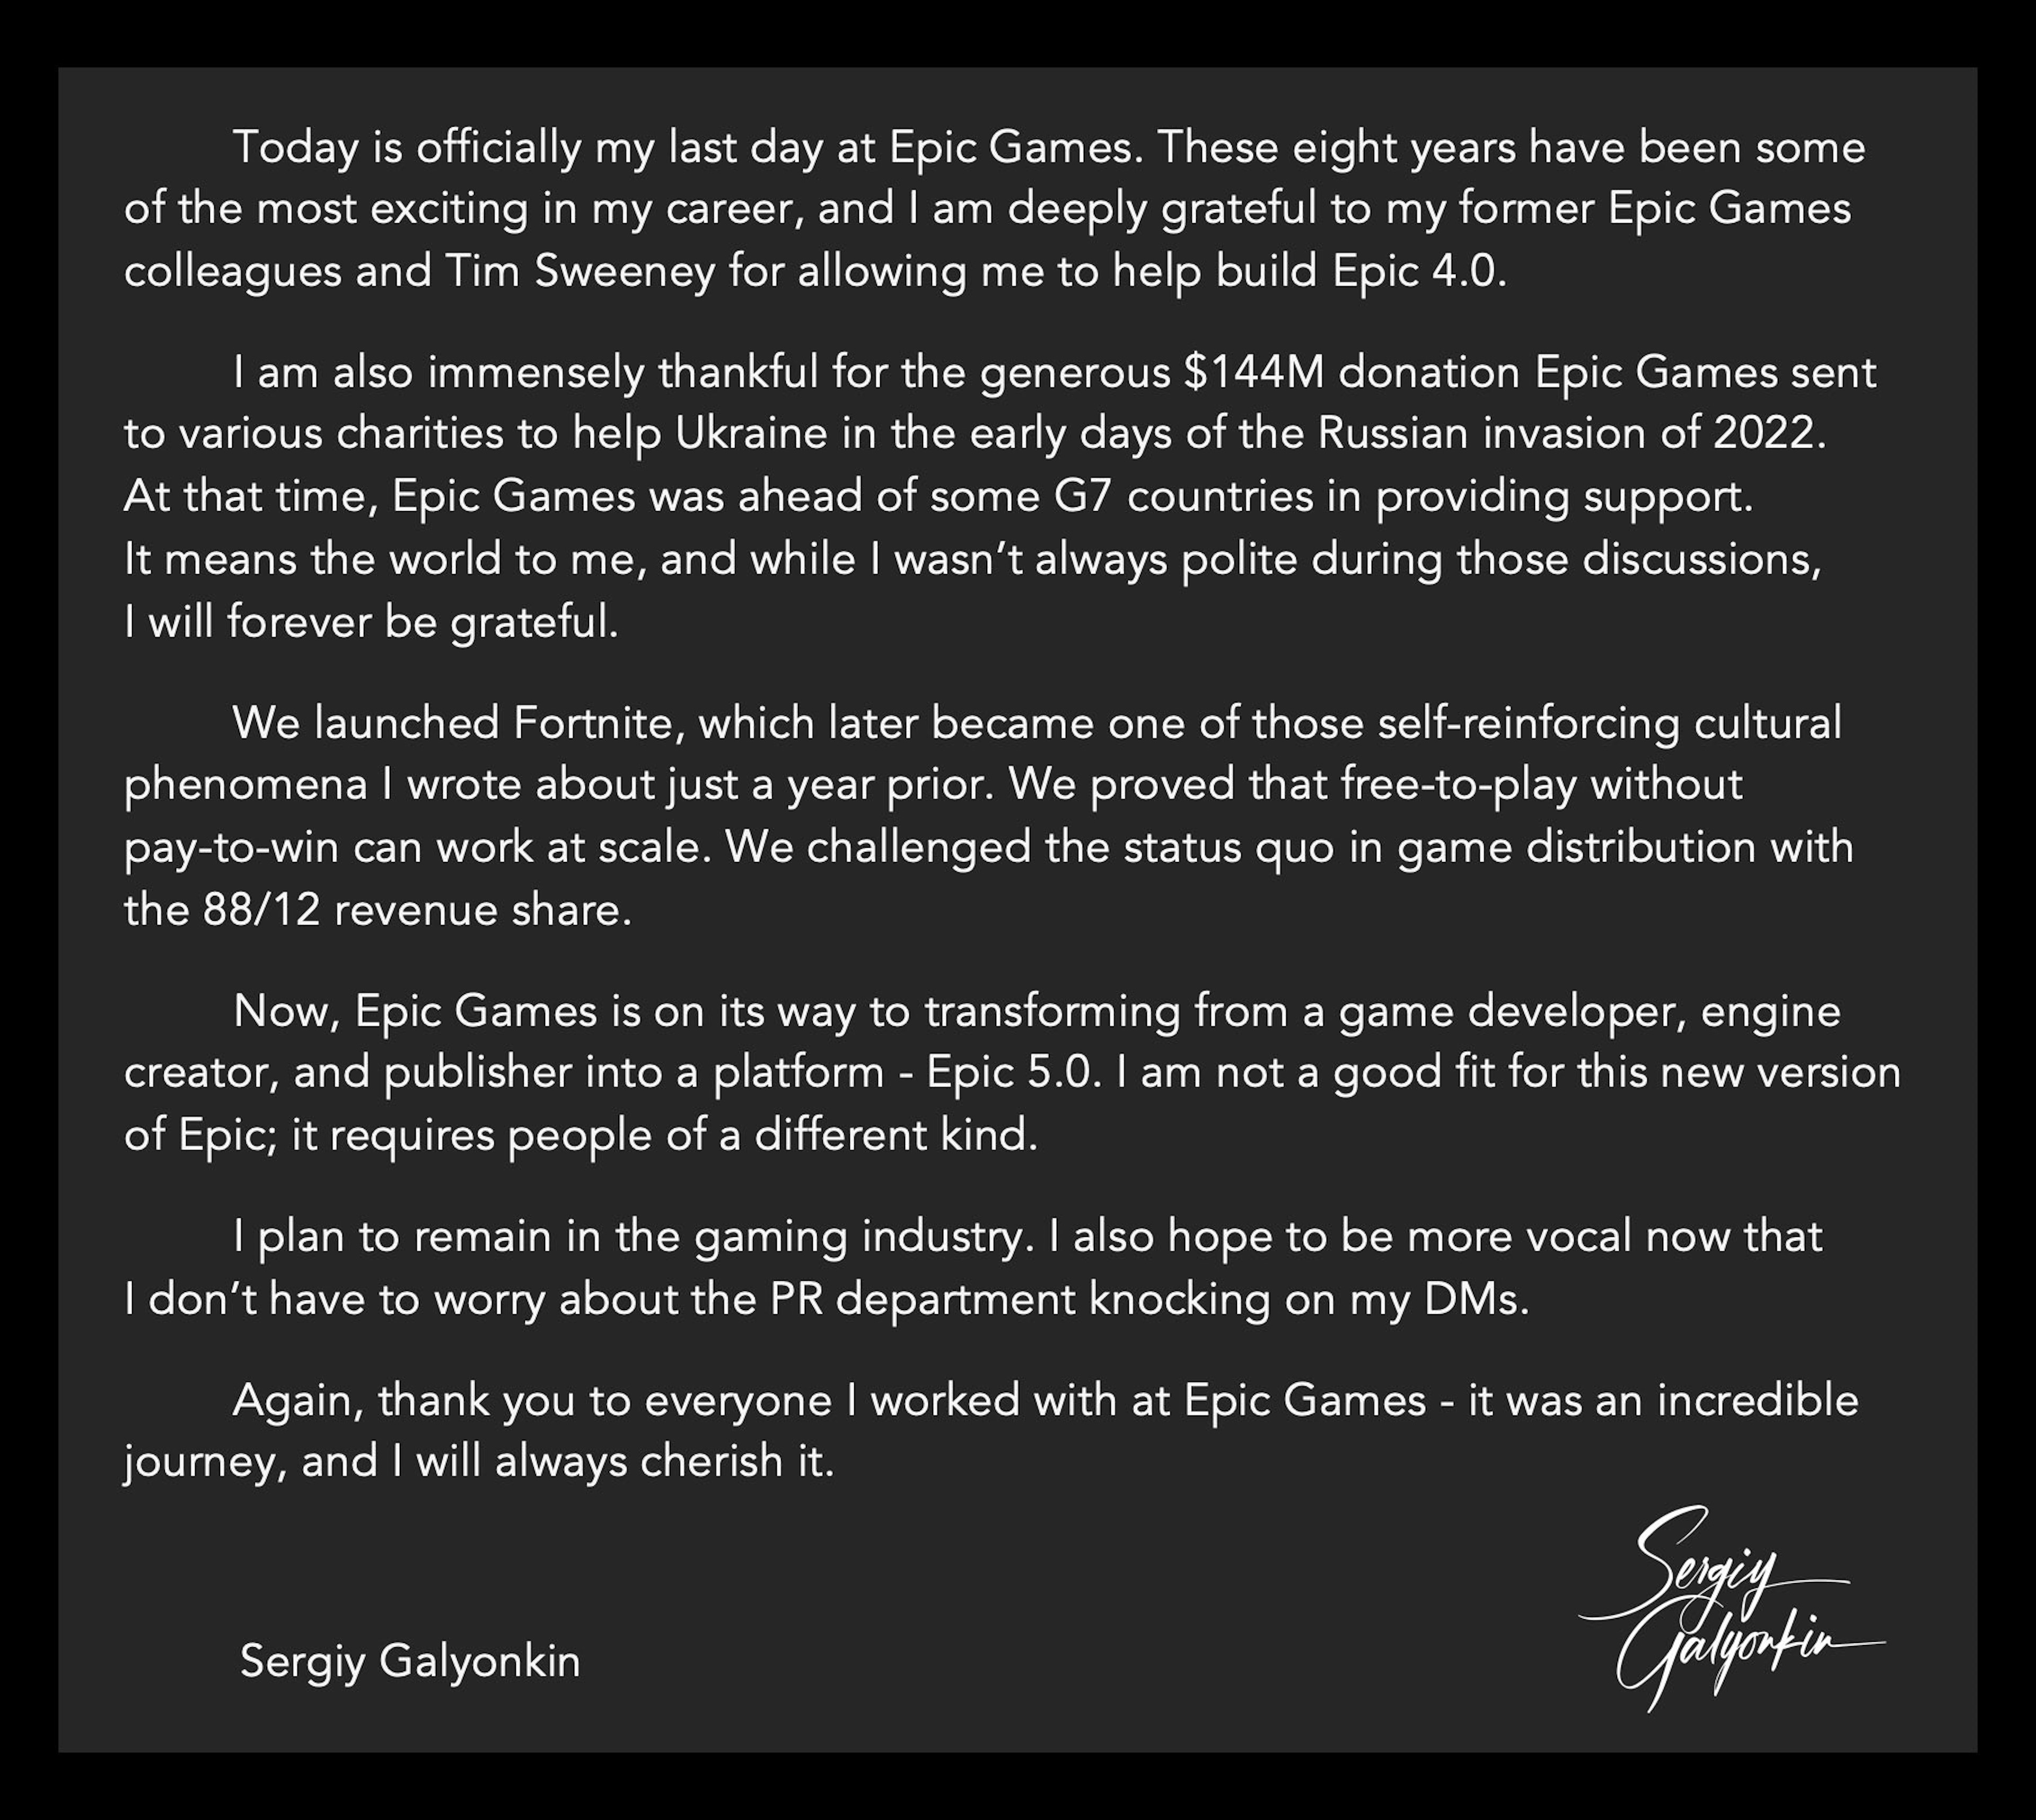 Sergiy Galyonkins Nachricht, in der er seinen Abschied von Epic Games ankündigt